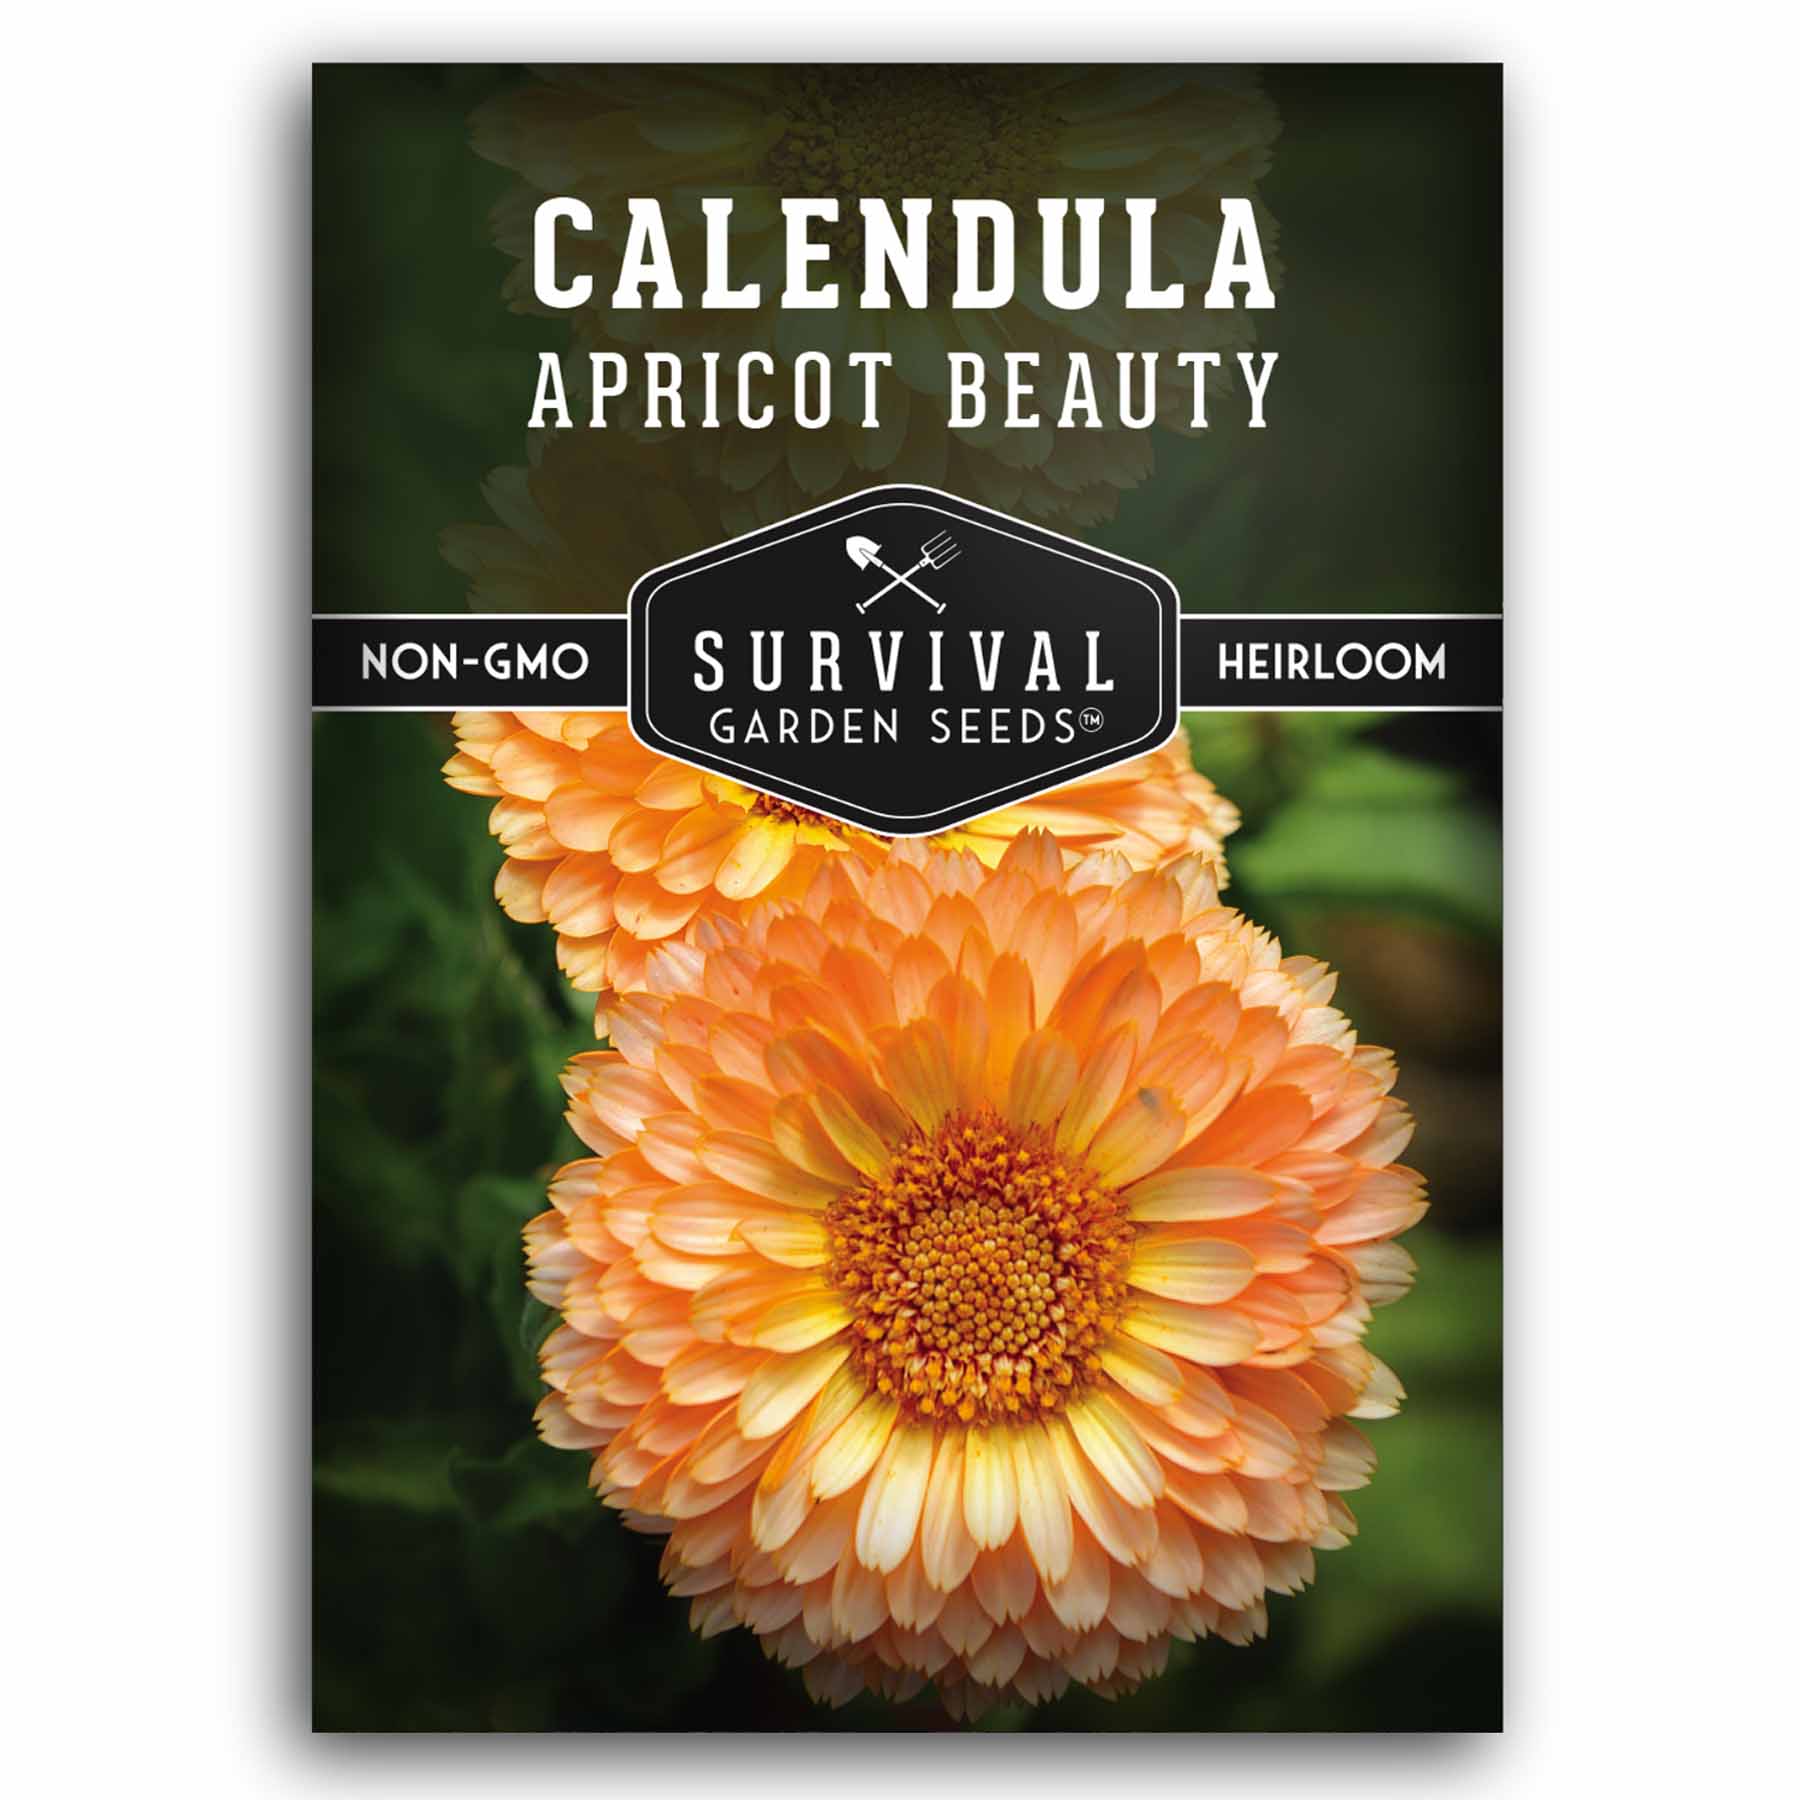 1 packet of Apricot Beauty Calendula seeds